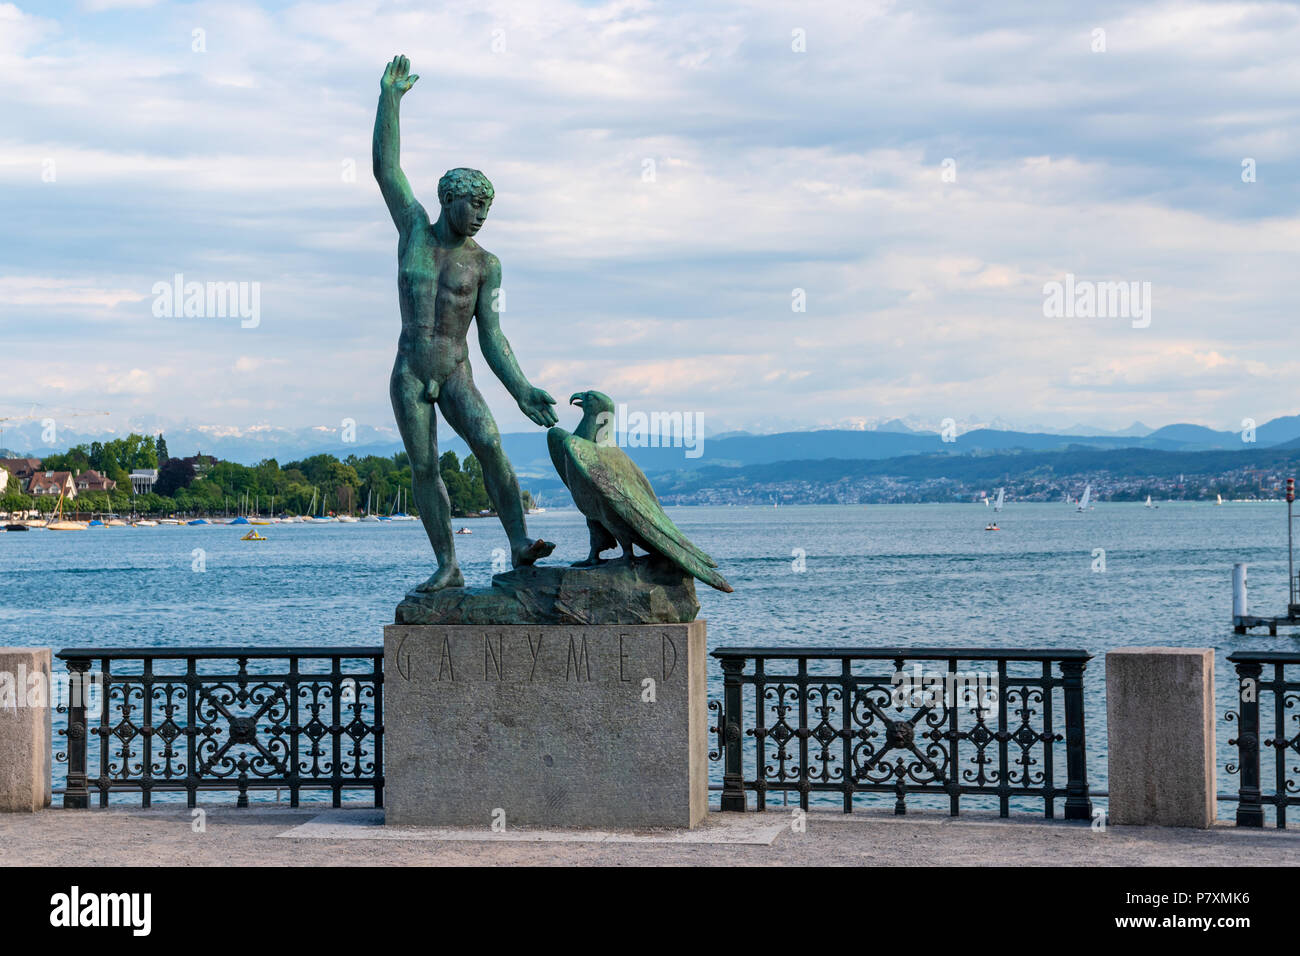 The Ganymede scuplture on the Bürkliplatz in Zurich, Switzerland Stock Photo